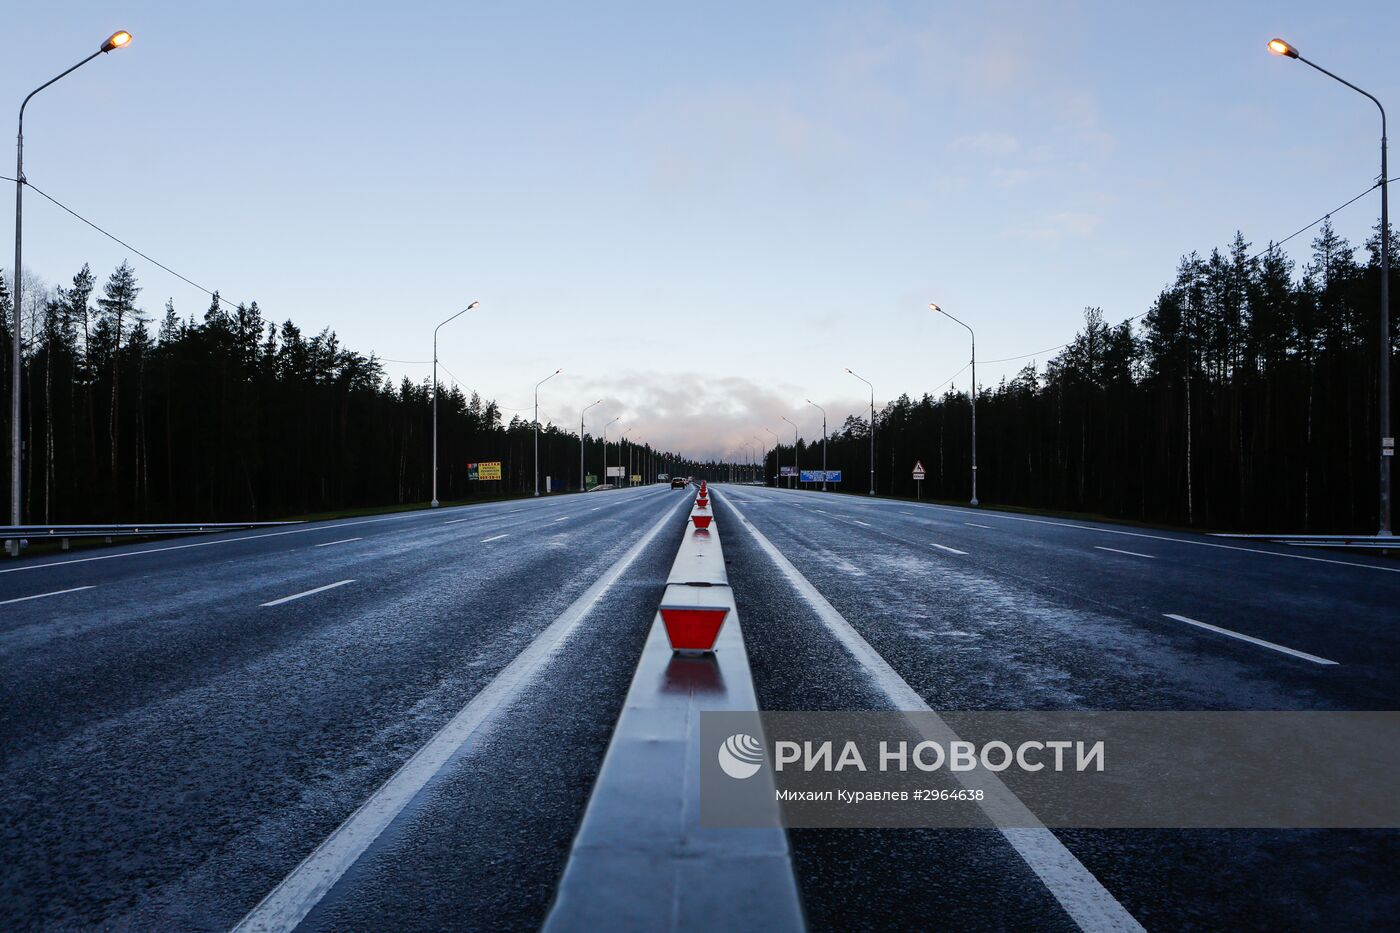 Открытие реконструированного участка трассы "Скандинавия" в Санкт-Петербурге